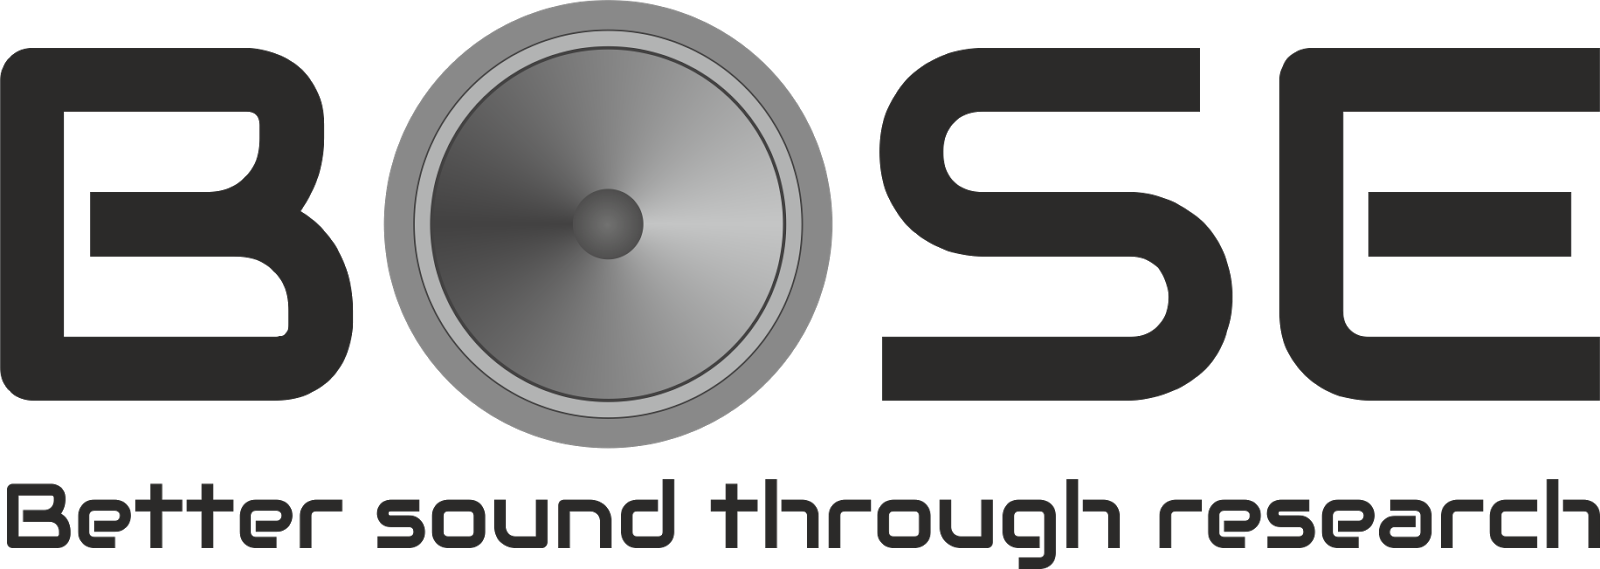 bose arojitsen better sound png logo